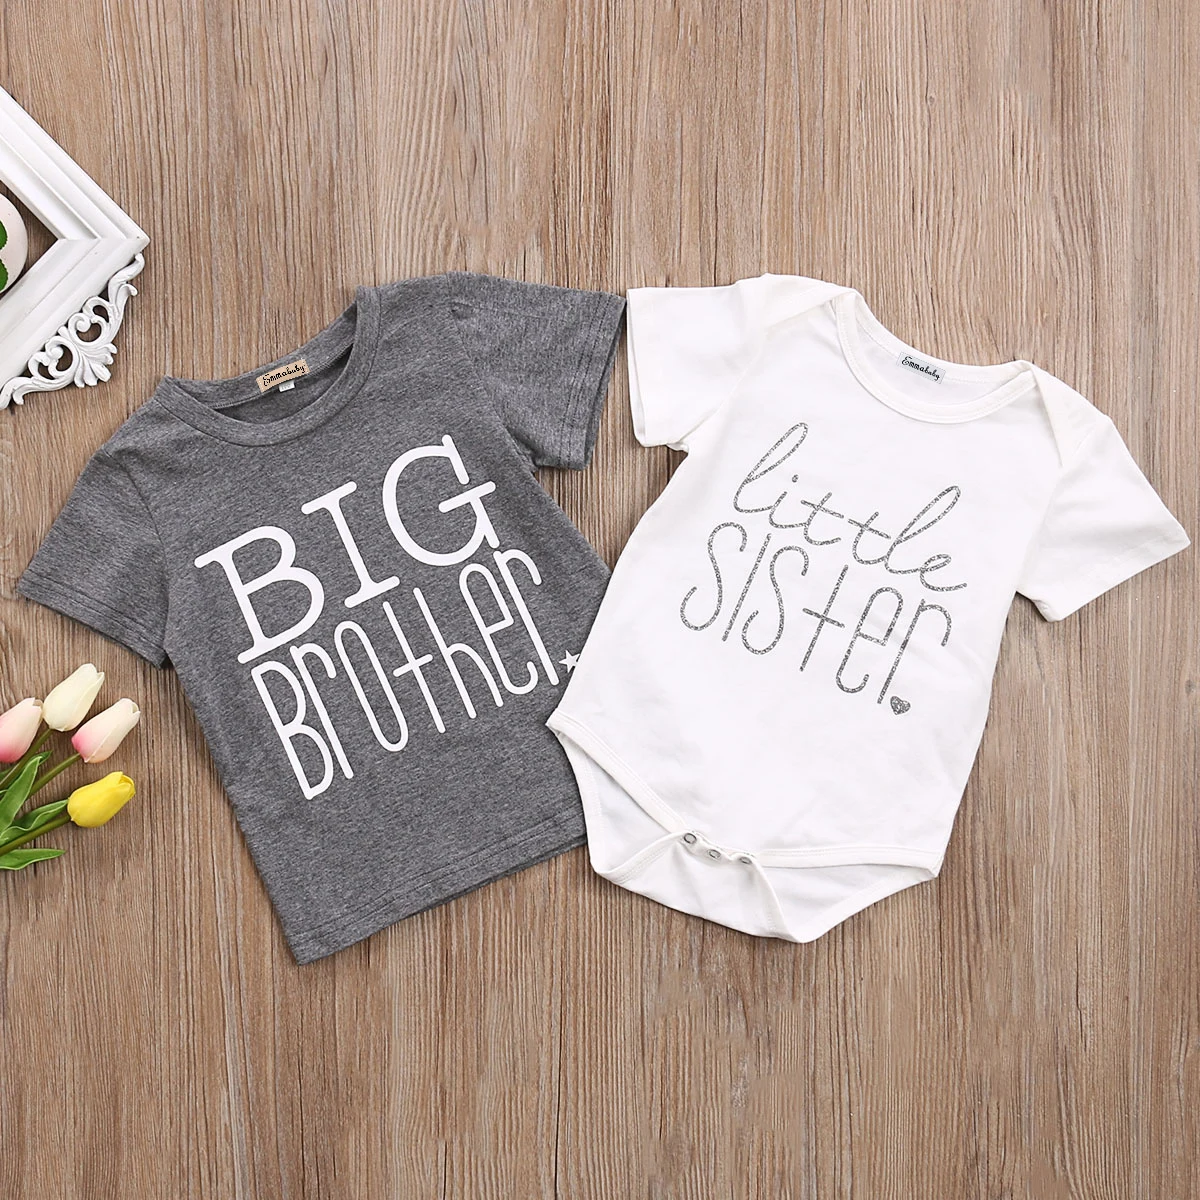 Emmababy T-shirt Borther And soeur Clthoes Fynny | T-shirt grand frère petite sœur, body en coton manches courtes avec lettres, hauts